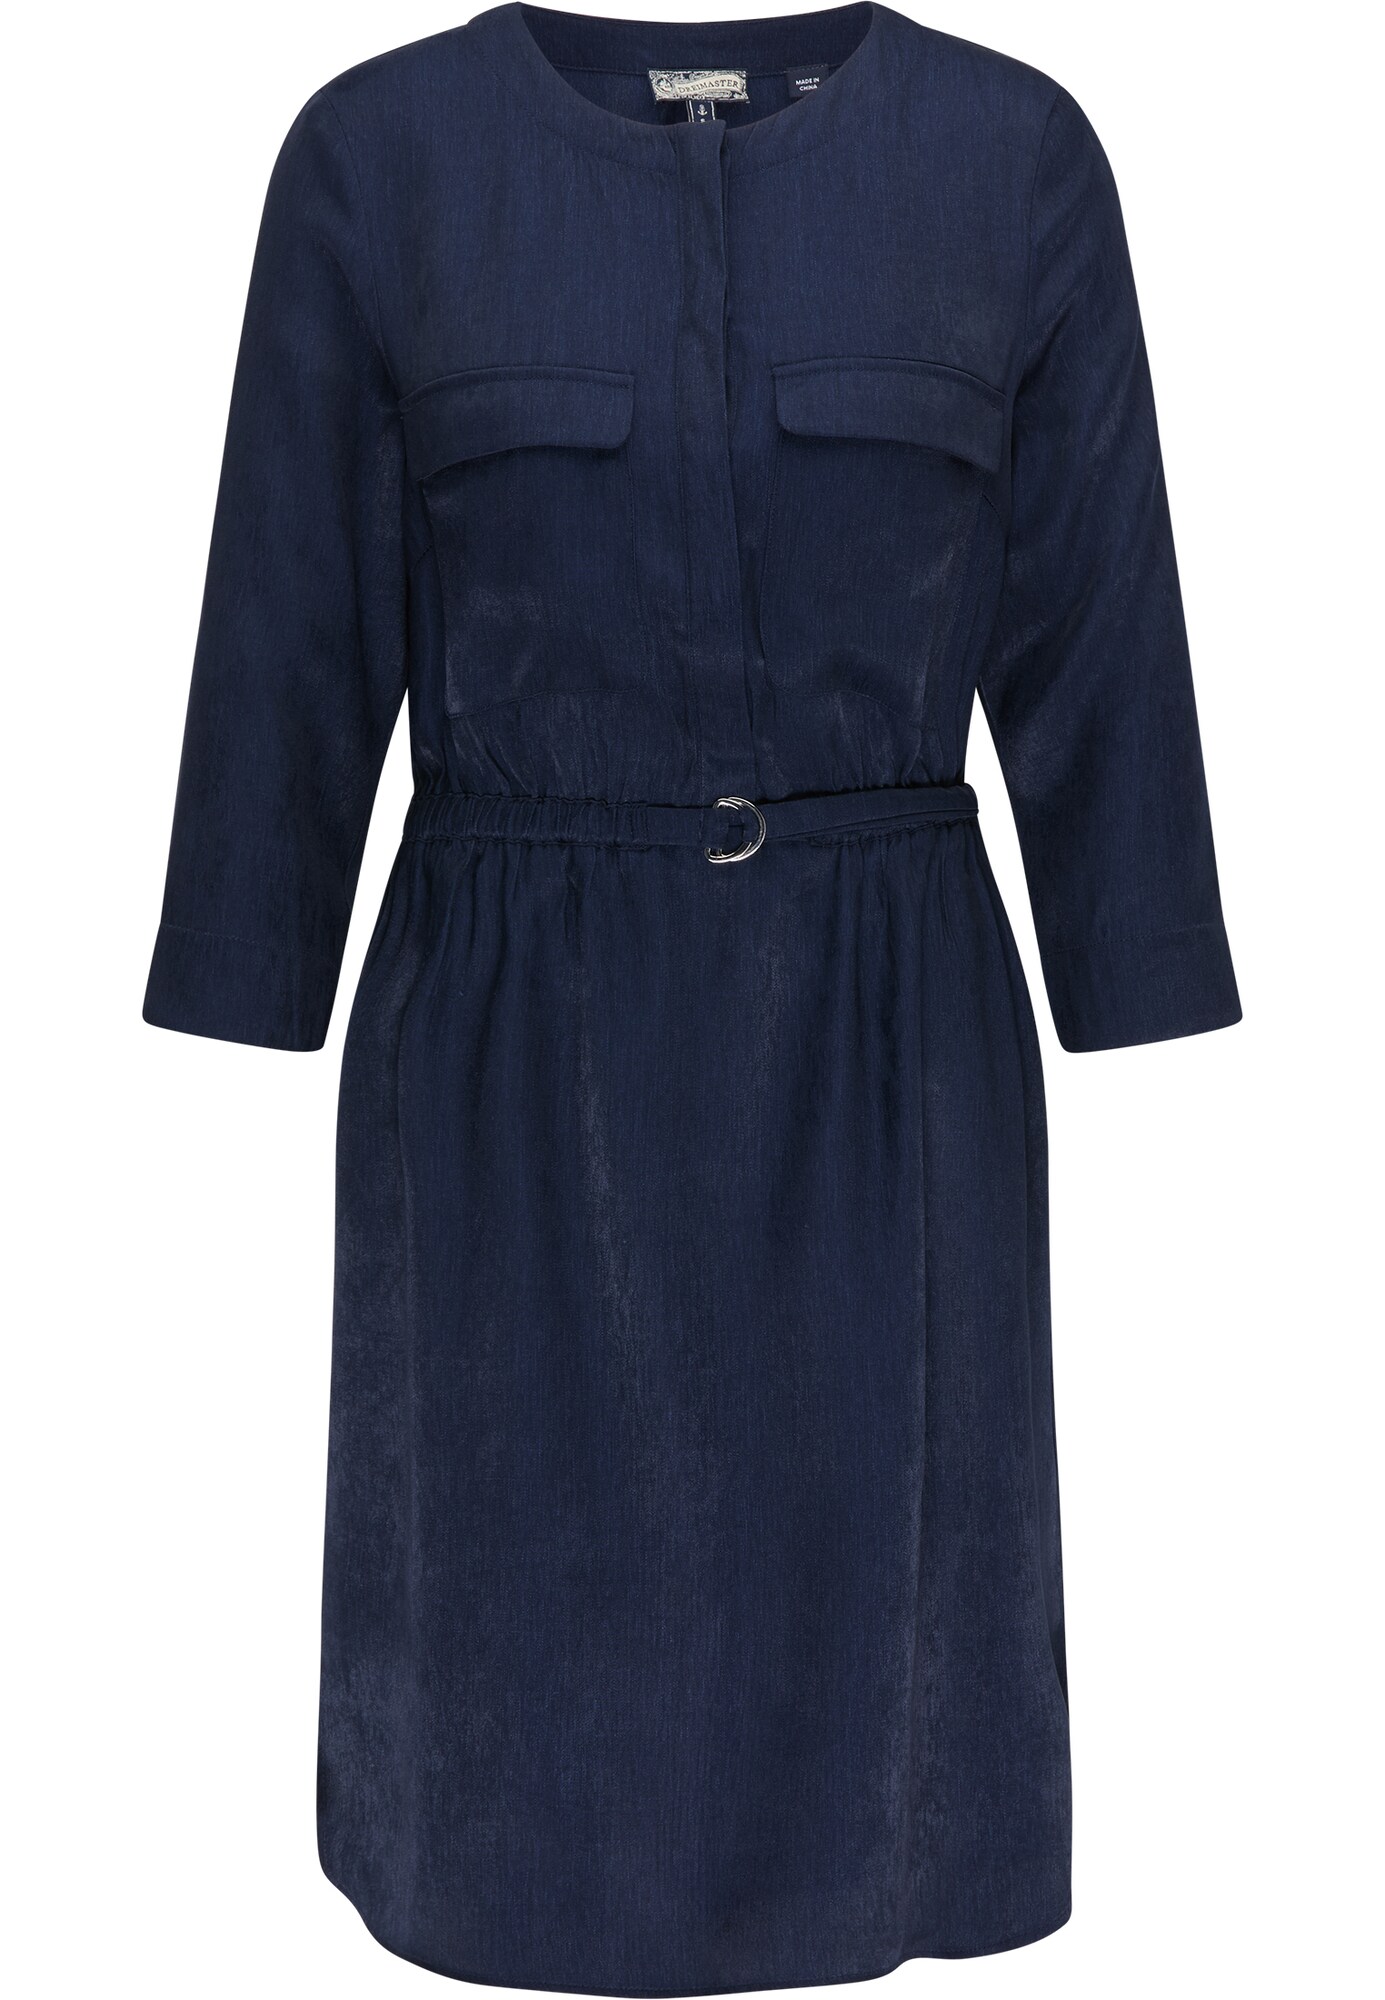 DreiMaster Vintage Palaidinės tipo suknelė  tamsiai mėlyna jūros spalva